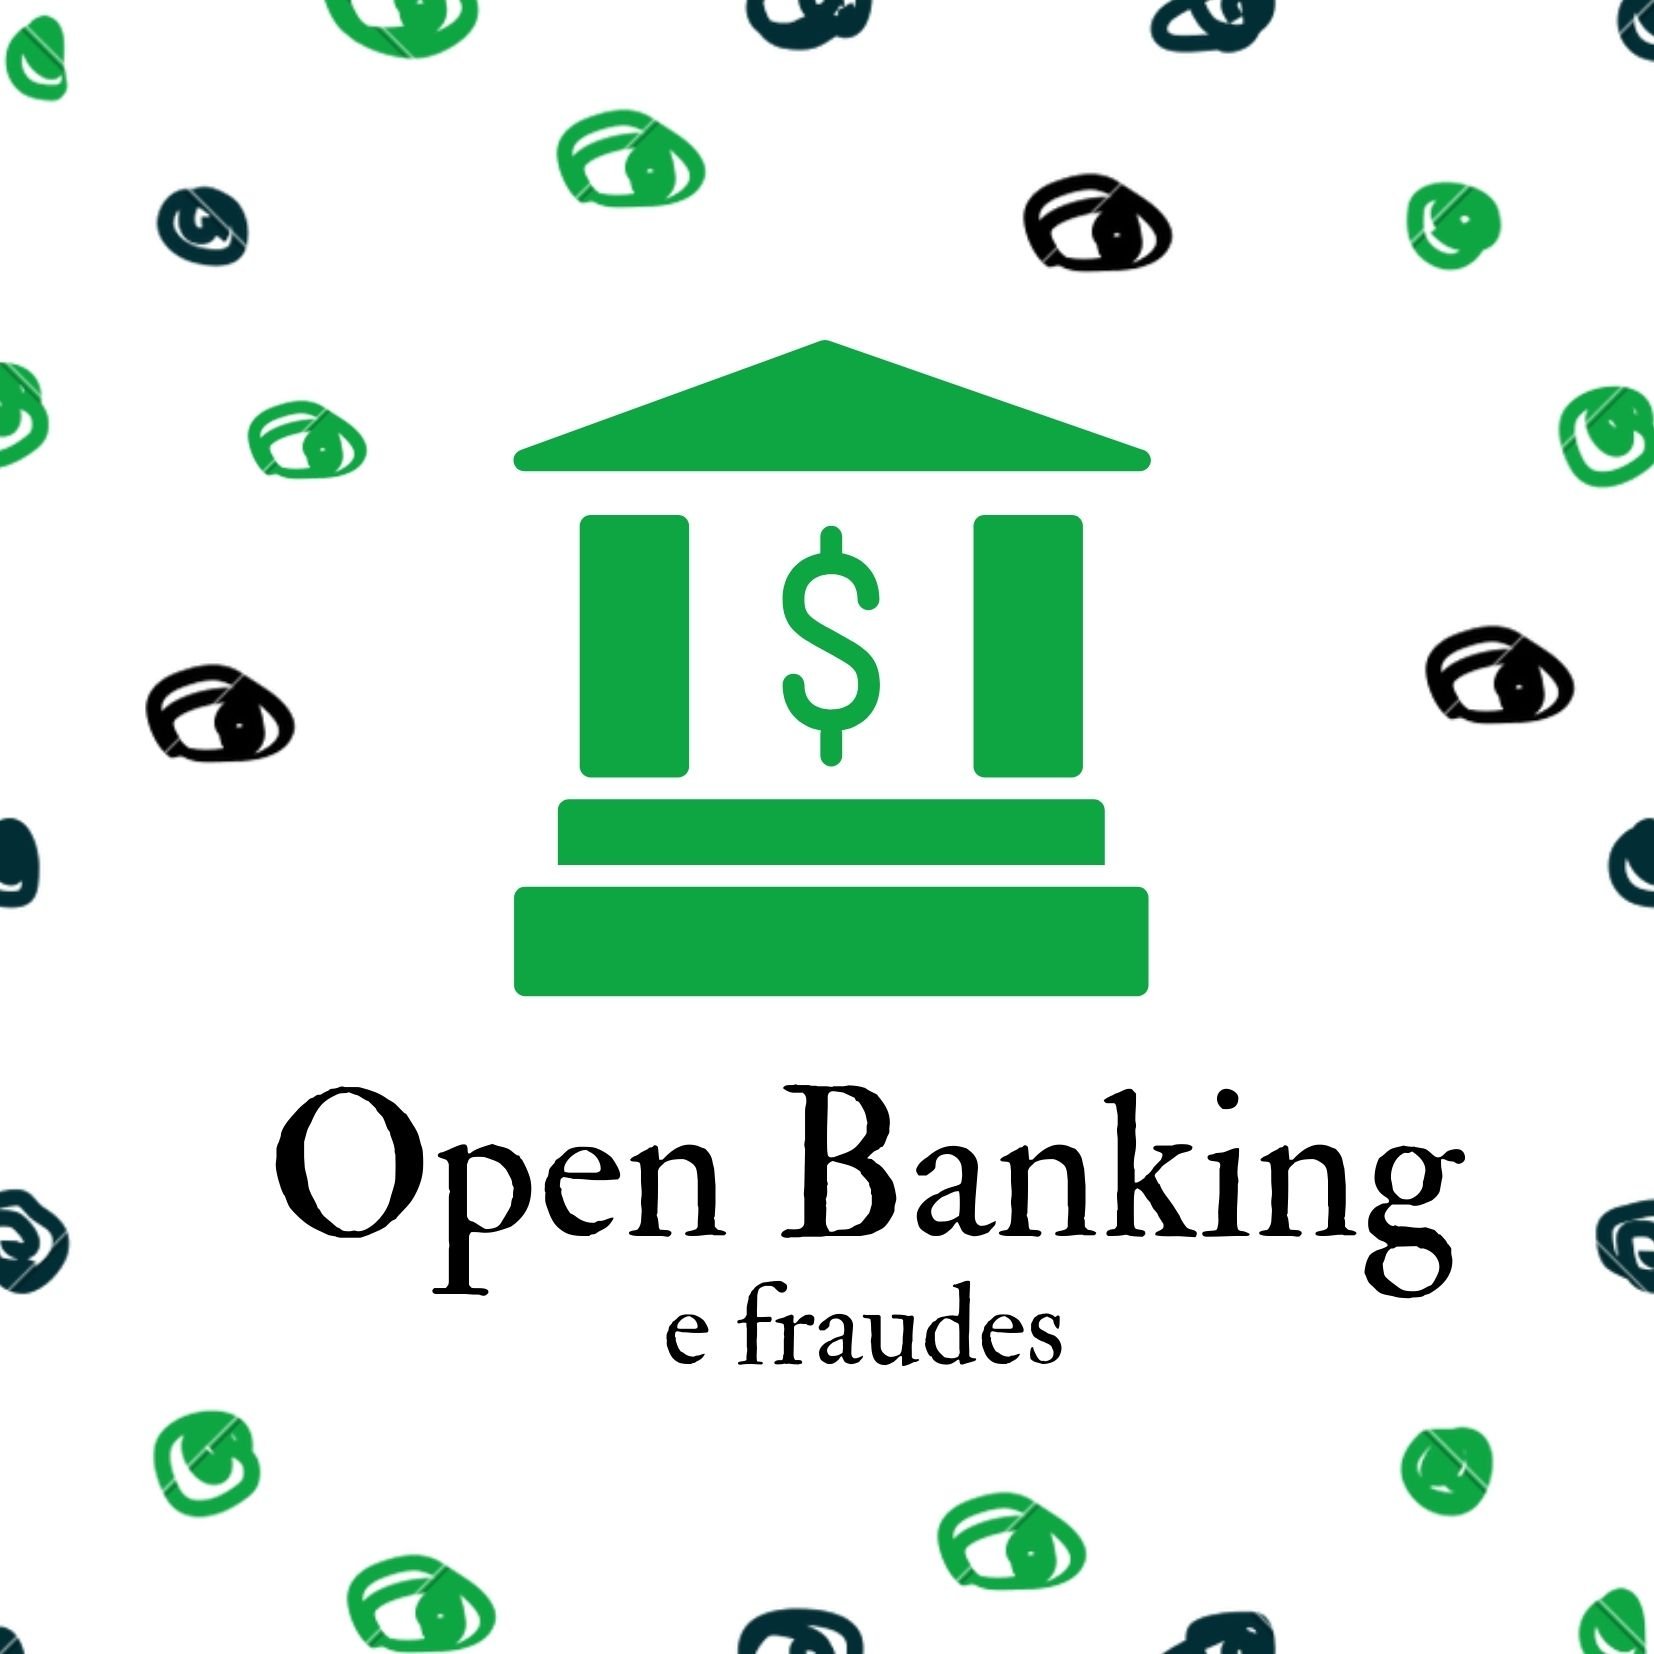 Previna-se contra os riscos de fraudes no Open Banking